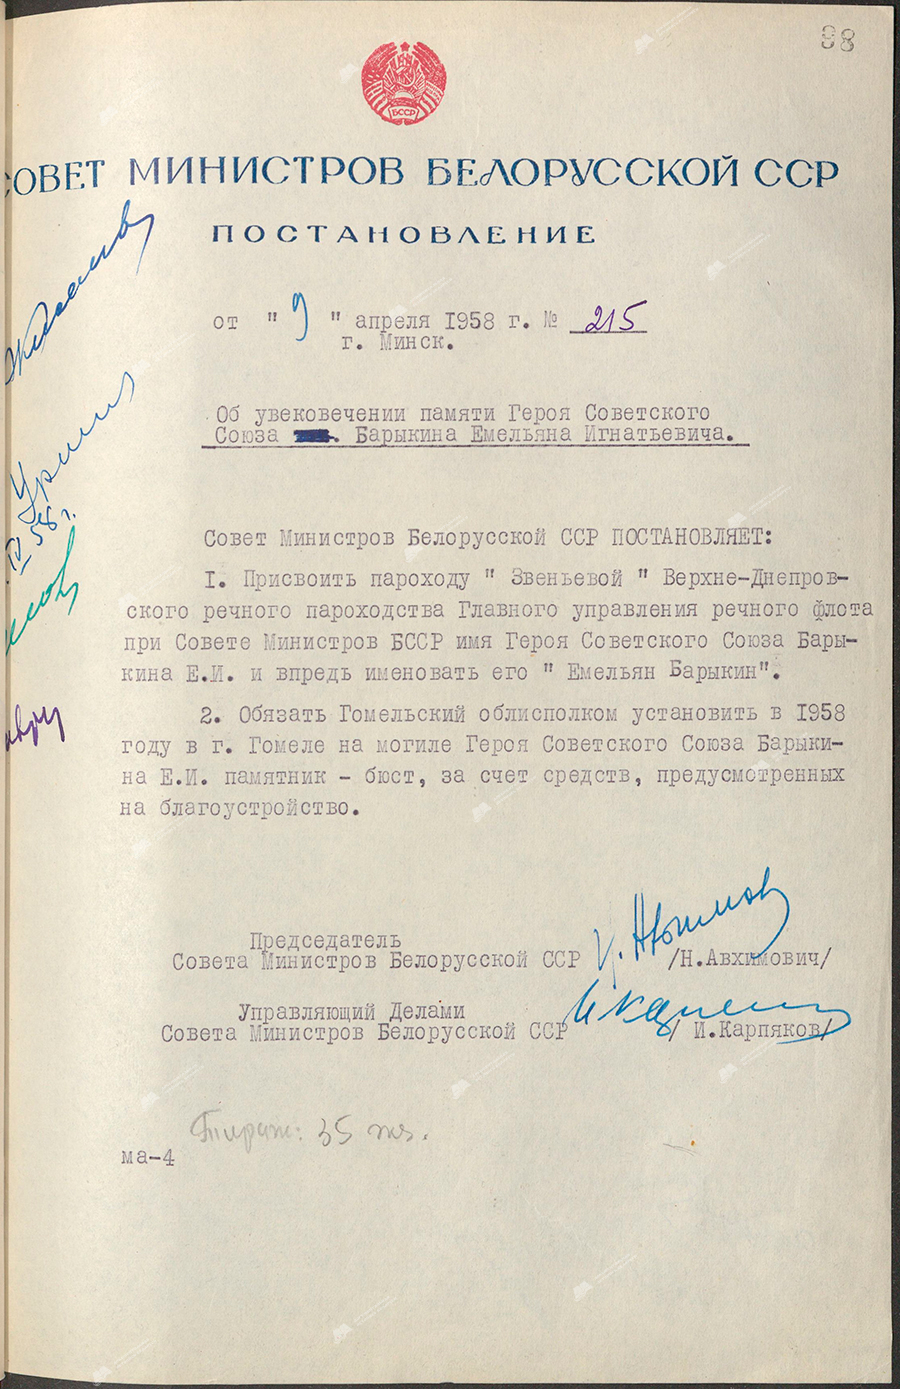 Beschluss Nr. 215 des Ministerrats der BSSR «Über die Aufrechterhaltung des Andenkens an den Helden der Sowjetunion Barykin Emelyan Ignatievich»-стр. 0